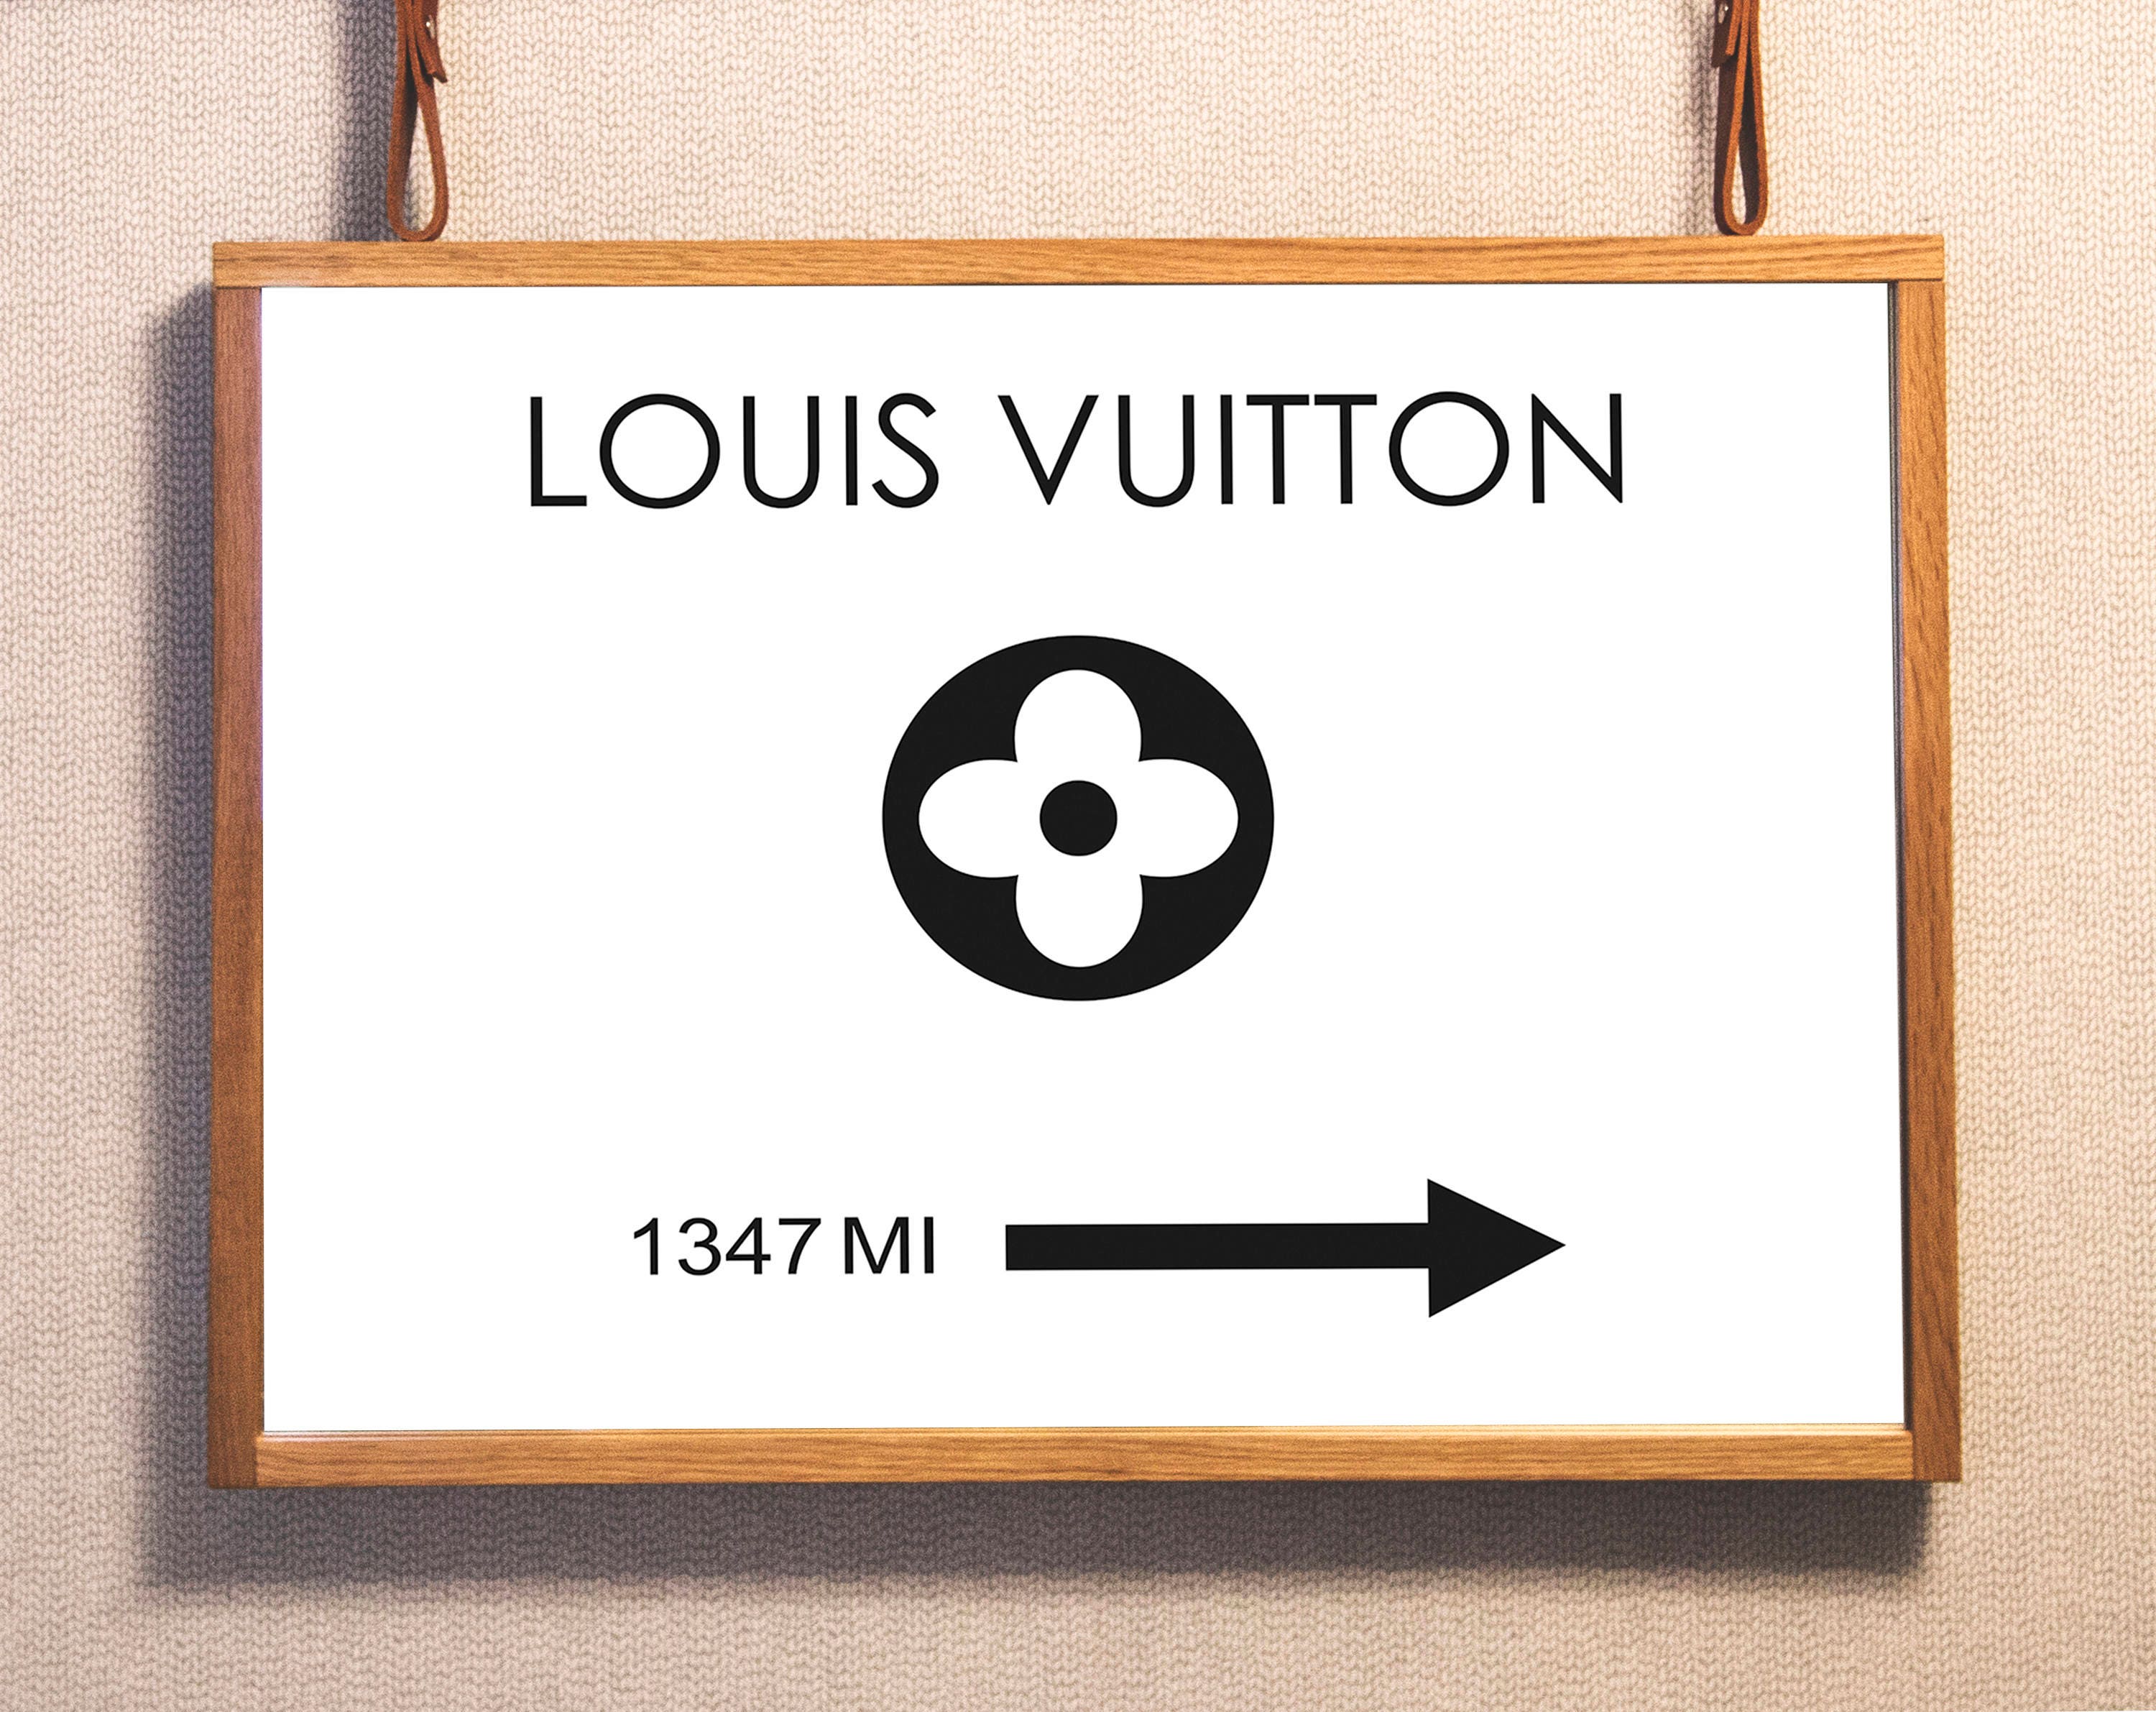 Louis Vuitton Wall Art. Louis Vuitton Poster. LV Wall Art.